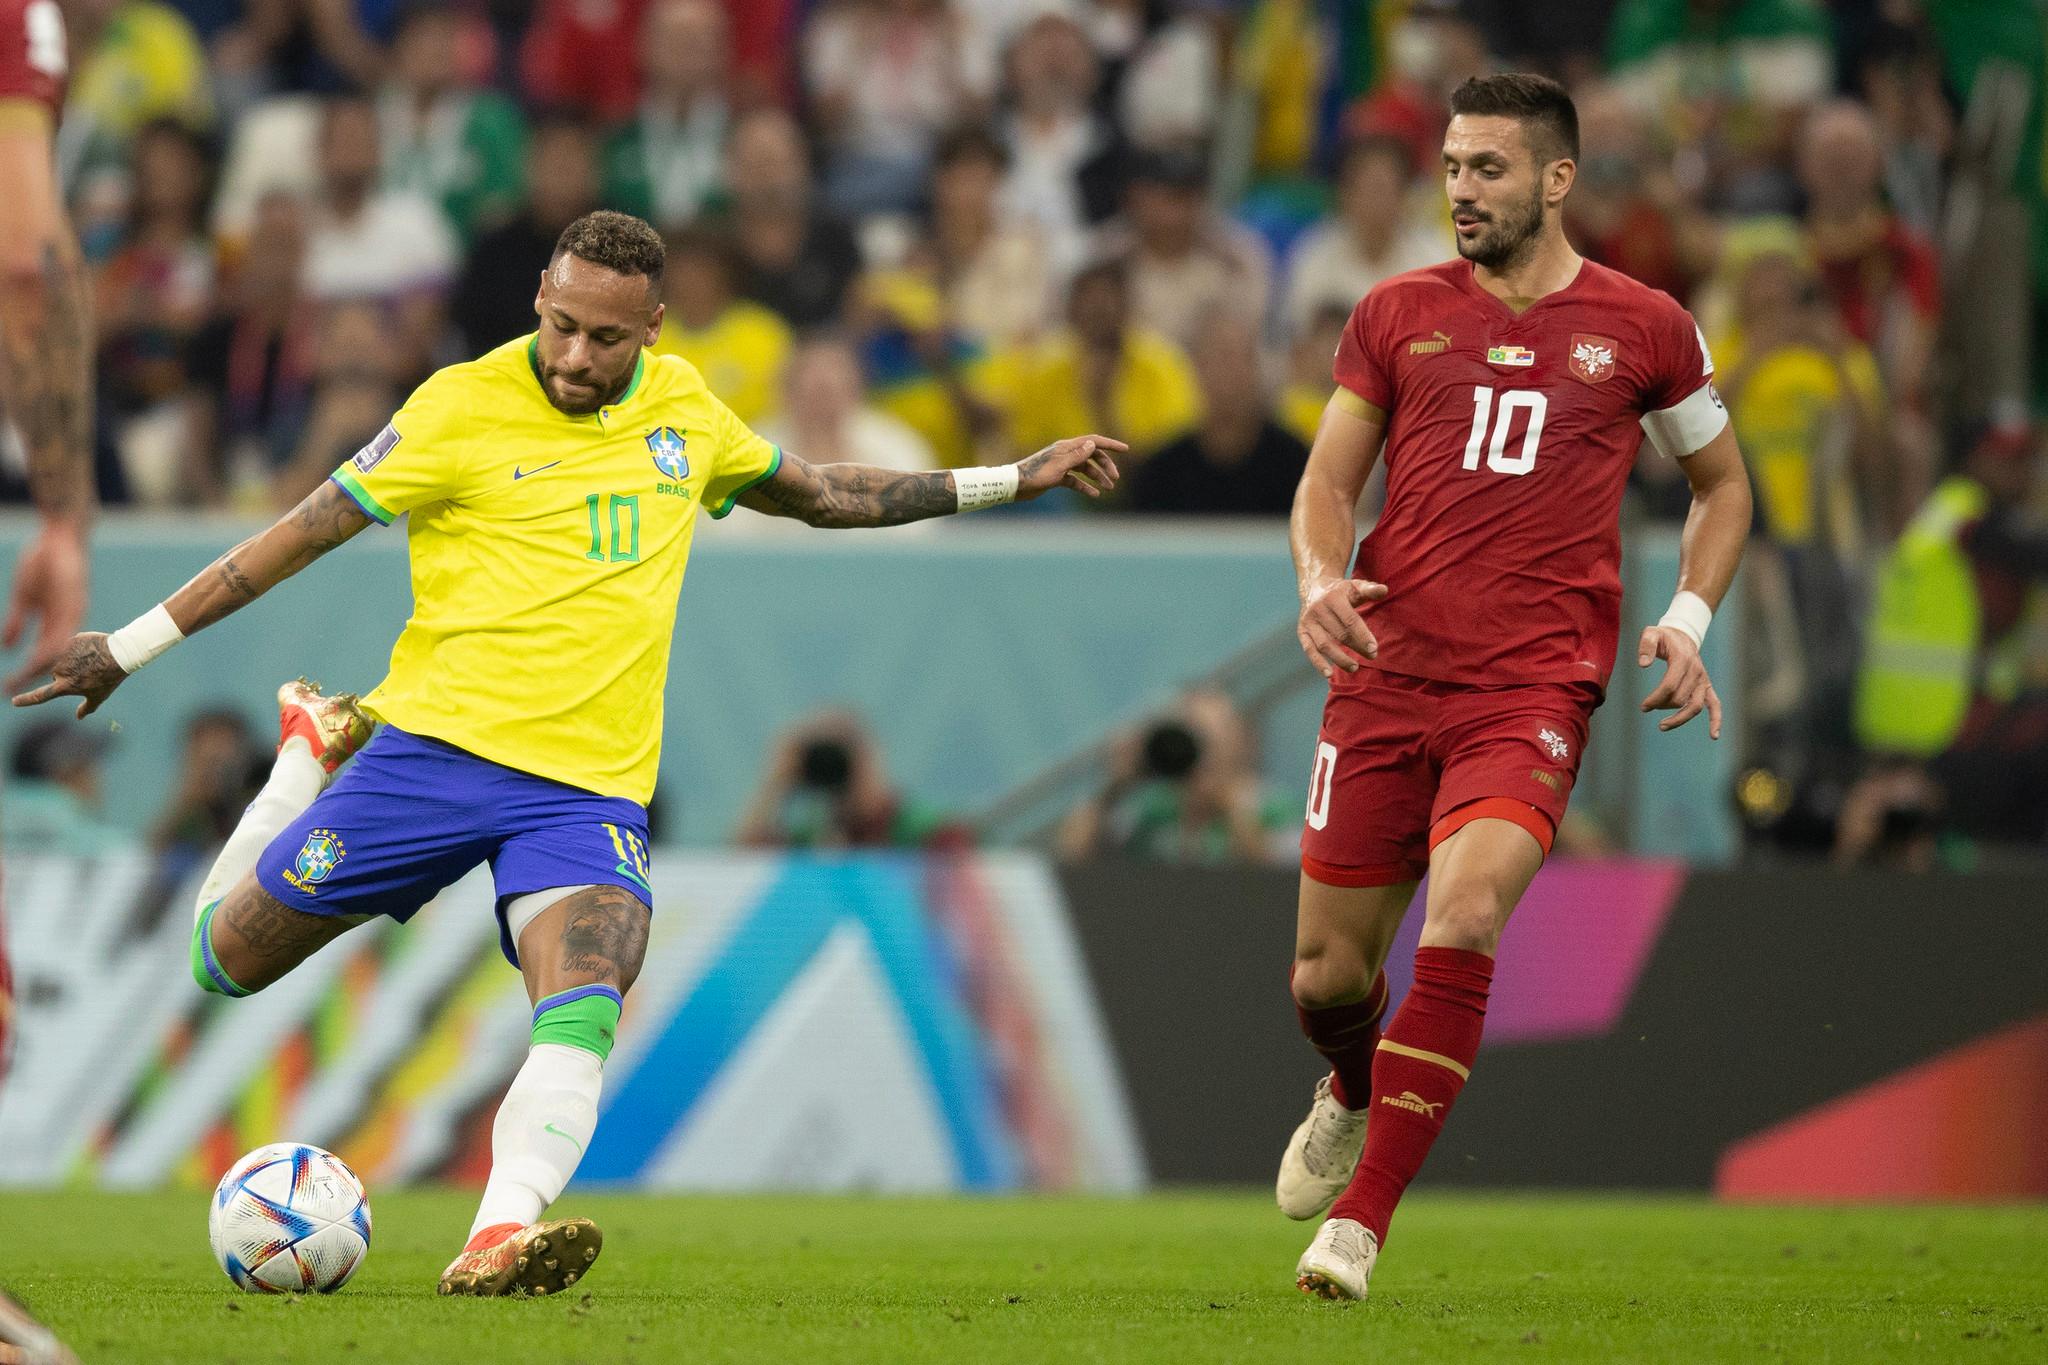 Brasil vence Sérvia na estreia da Copa do Mundo com brilho de Richarlison -  Copa do Mundo - Diário do Nordeste